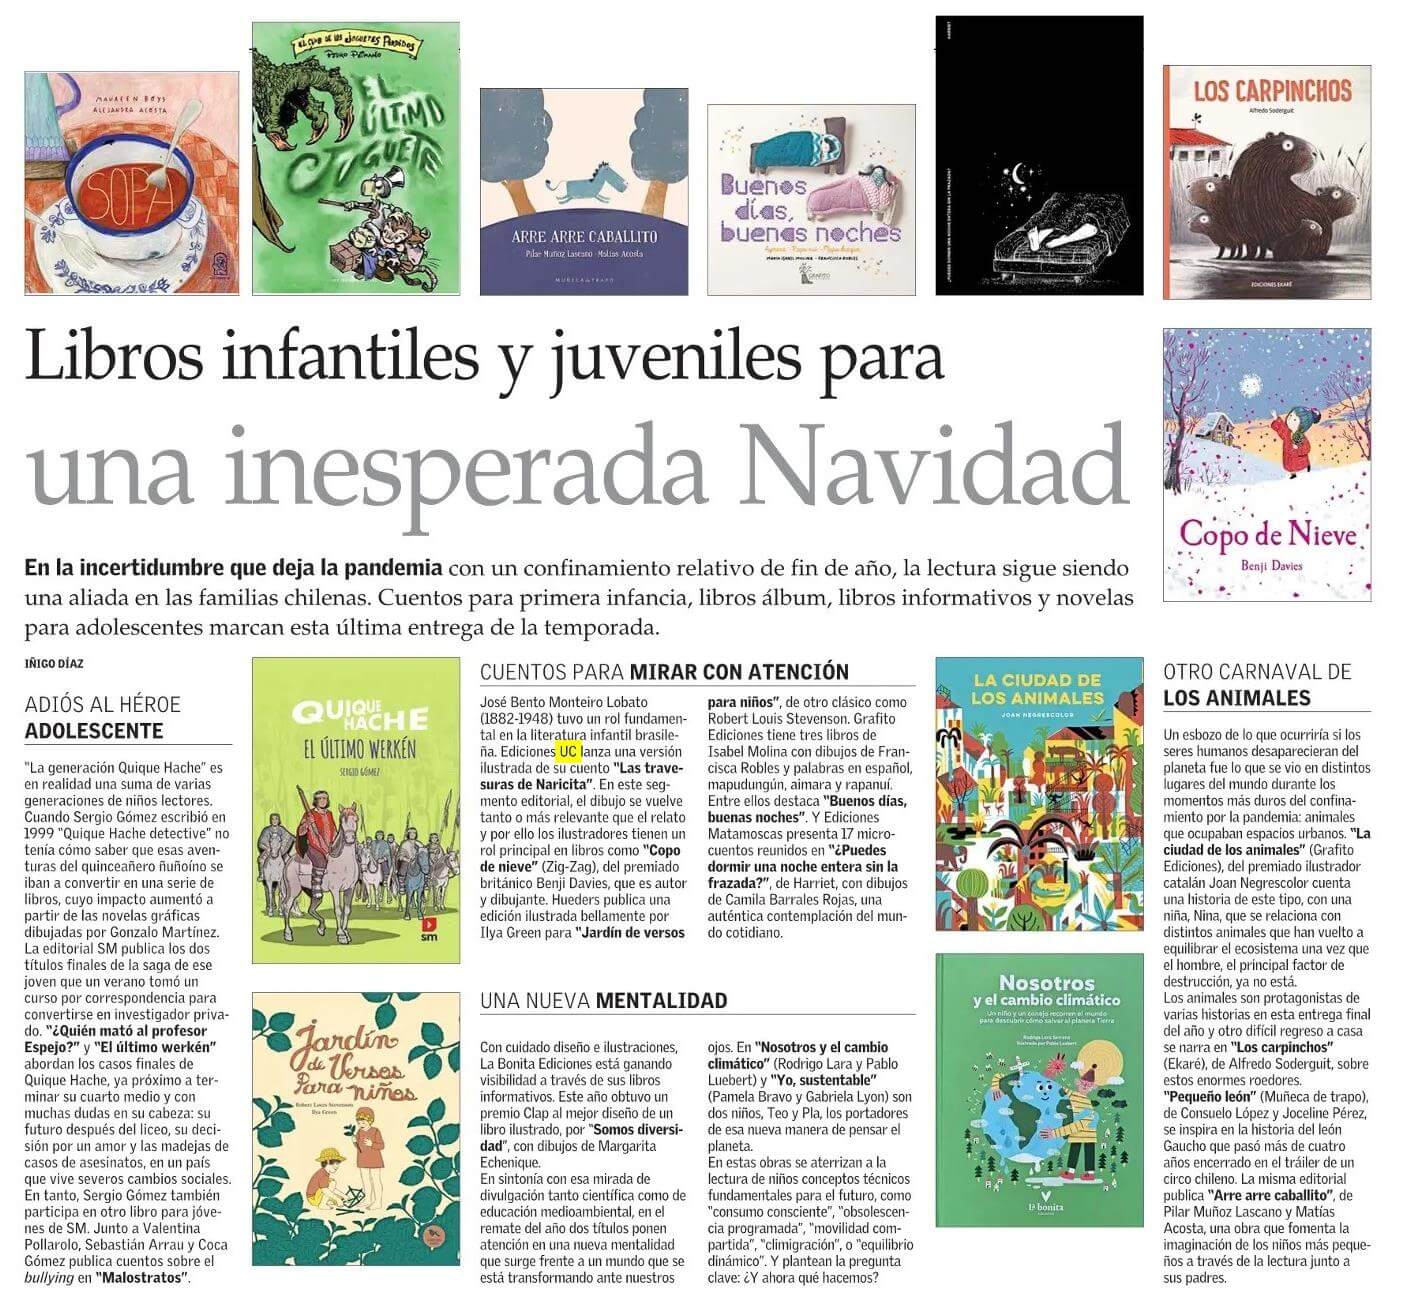 Nota en el diario El Mercurio que anuncia: libros infantiles y juveniles para una inesperada Navidad.